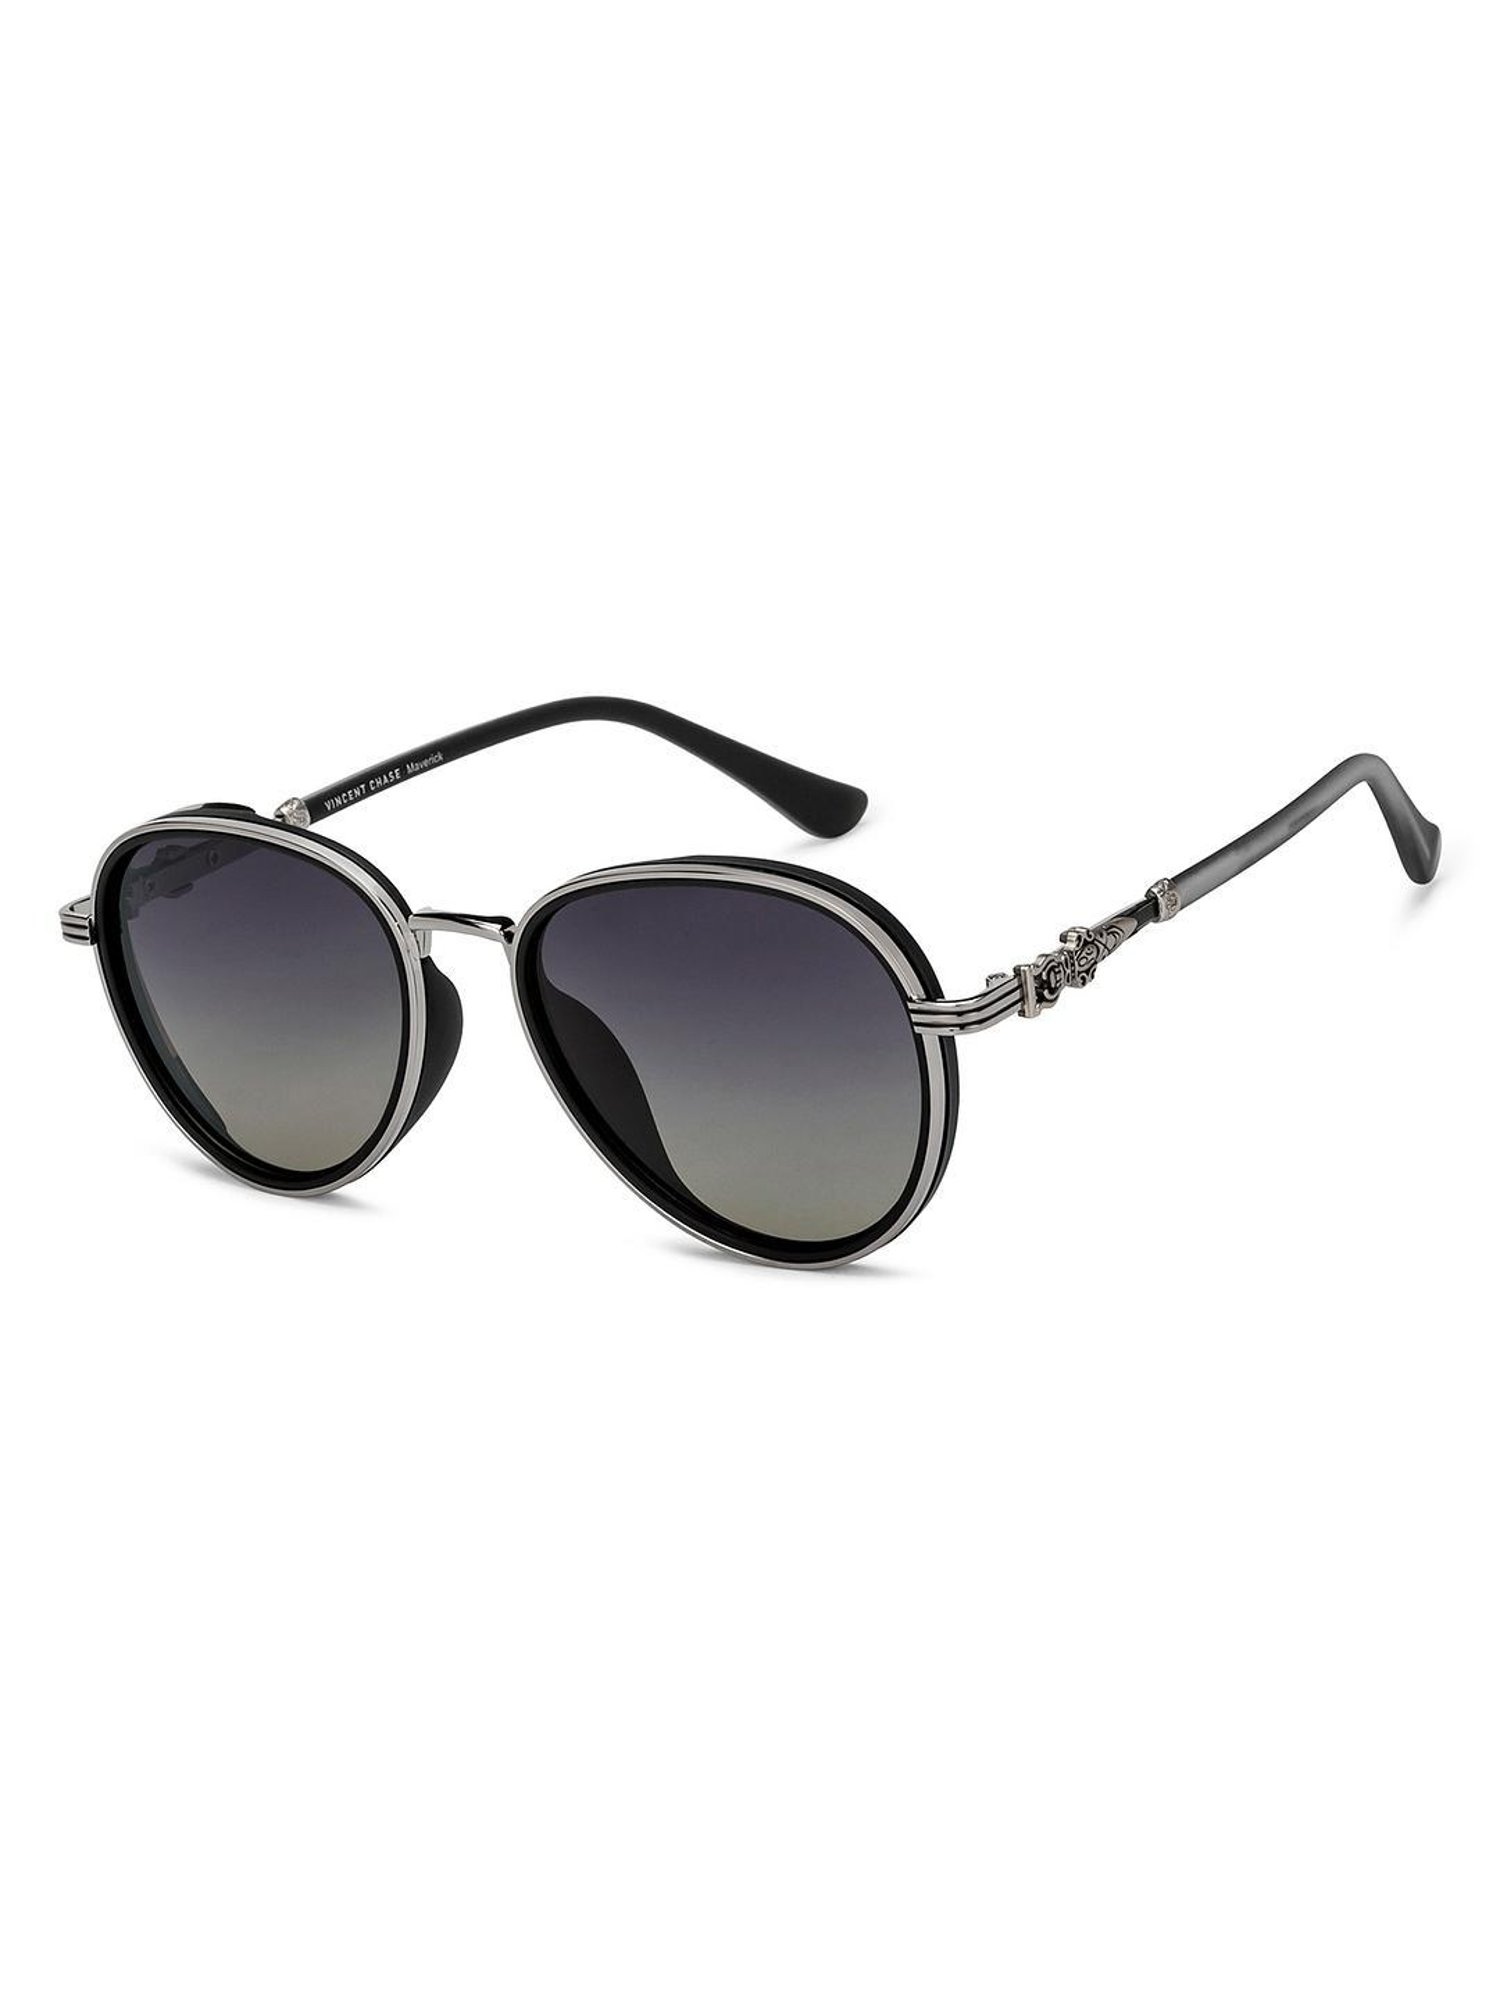 Powered Sunglasses by LensKart ⛅ Full Details Review - YouTube